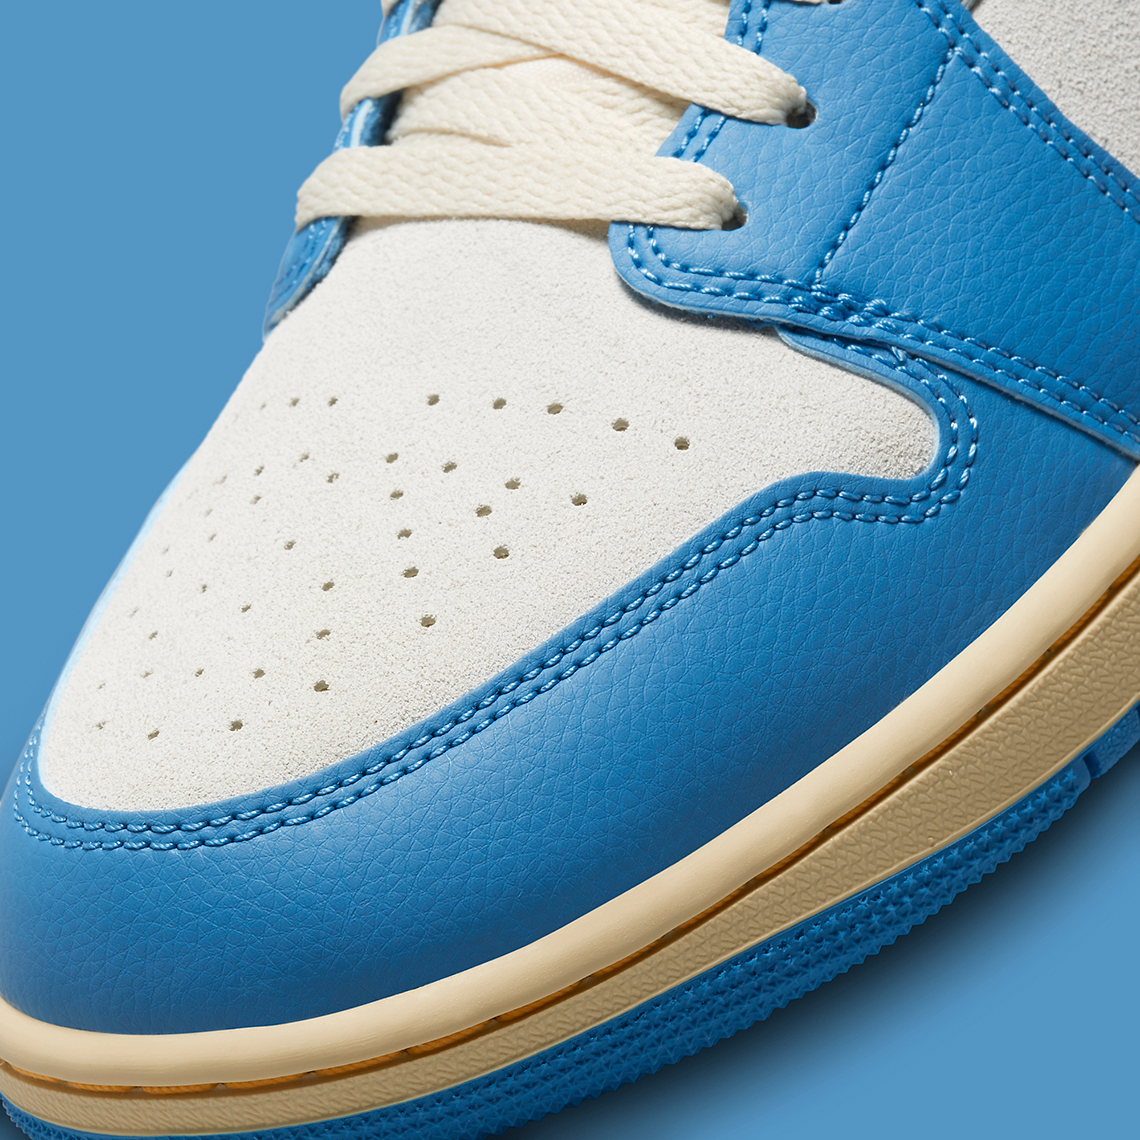 Footwear “Off-Louis” Air Jordan 1 V2 by @Ceeze17 Set To Drop This Weekend  – GOODGARBS